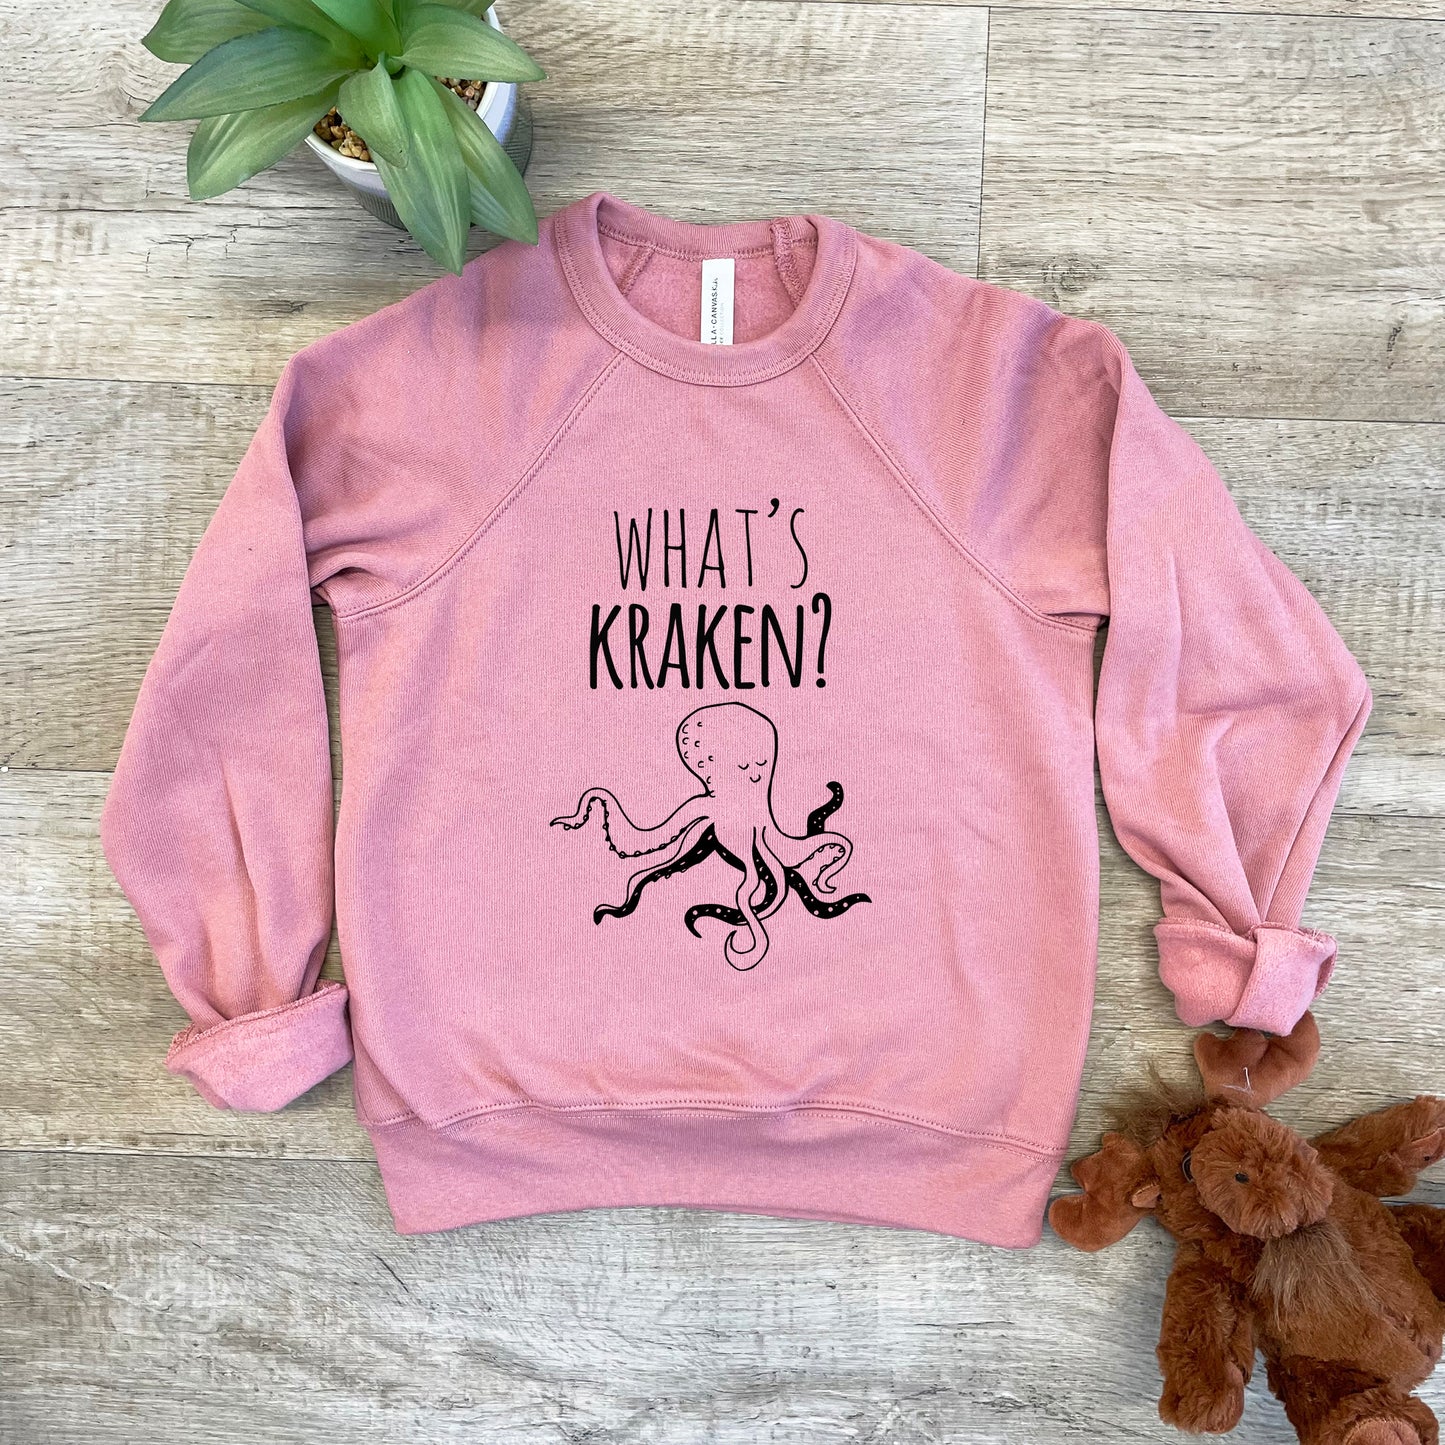 What's Kraken? (Sea Monster) - Kid's Sweatshirt - Heather Gray or Mauve